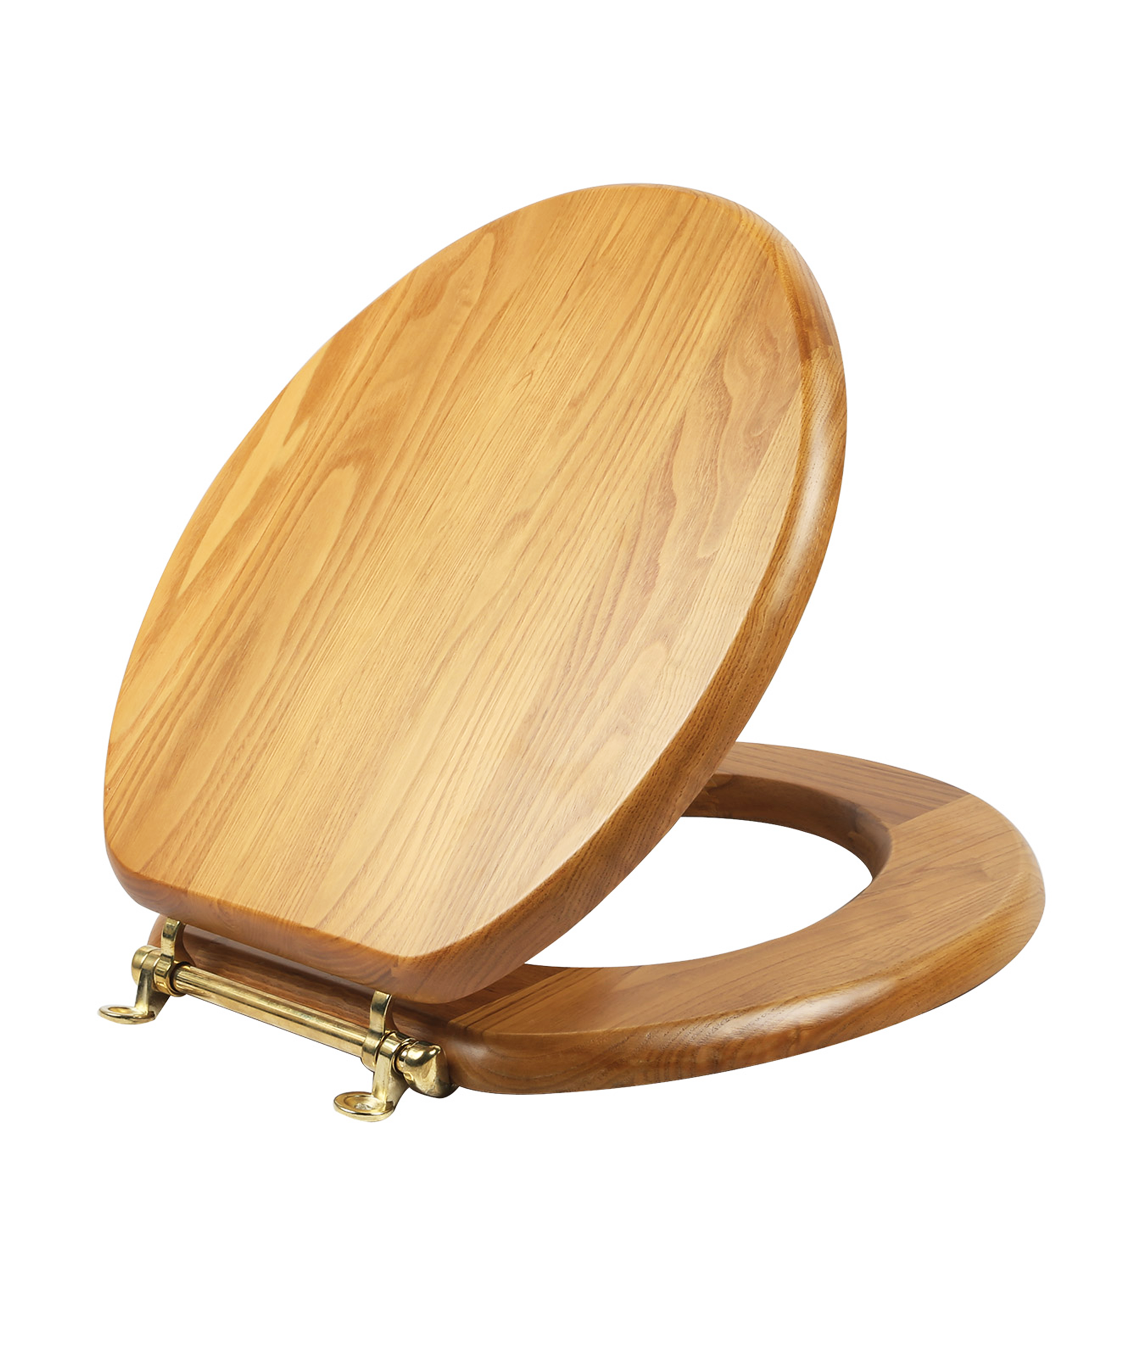 Крышка для туалета купить. Деревянное сиденье для унитаза. Унитаз с деревянной крышкой. Деревянная сидушка для унитаза. Крышка для унитаза из дерева.